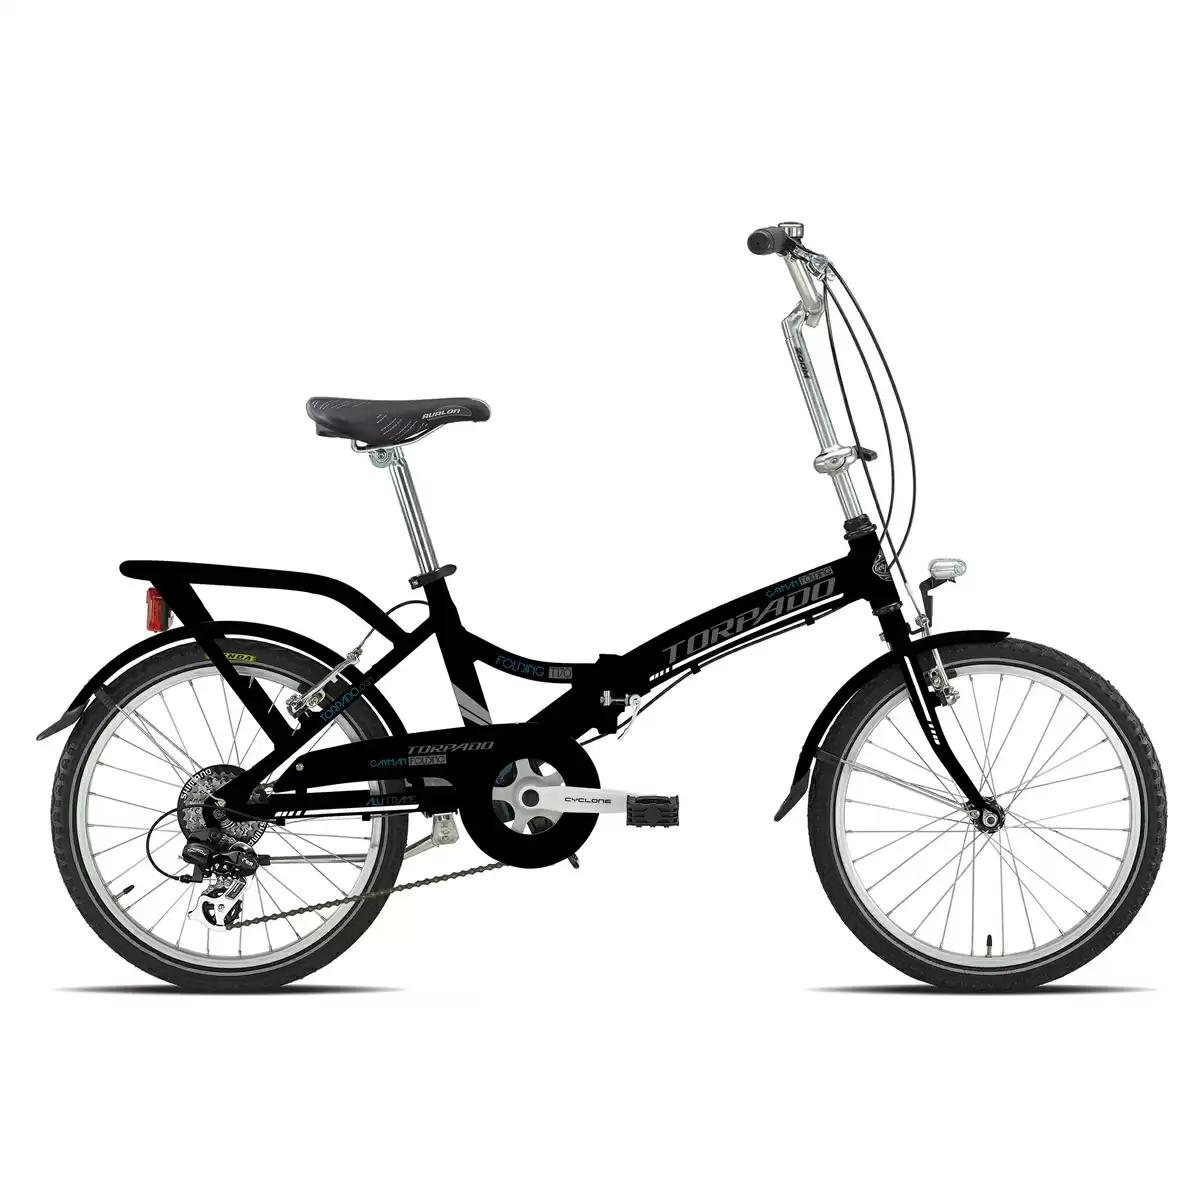 Bicicleta plegable T170 Cayman 20'' alu 6v negra - image